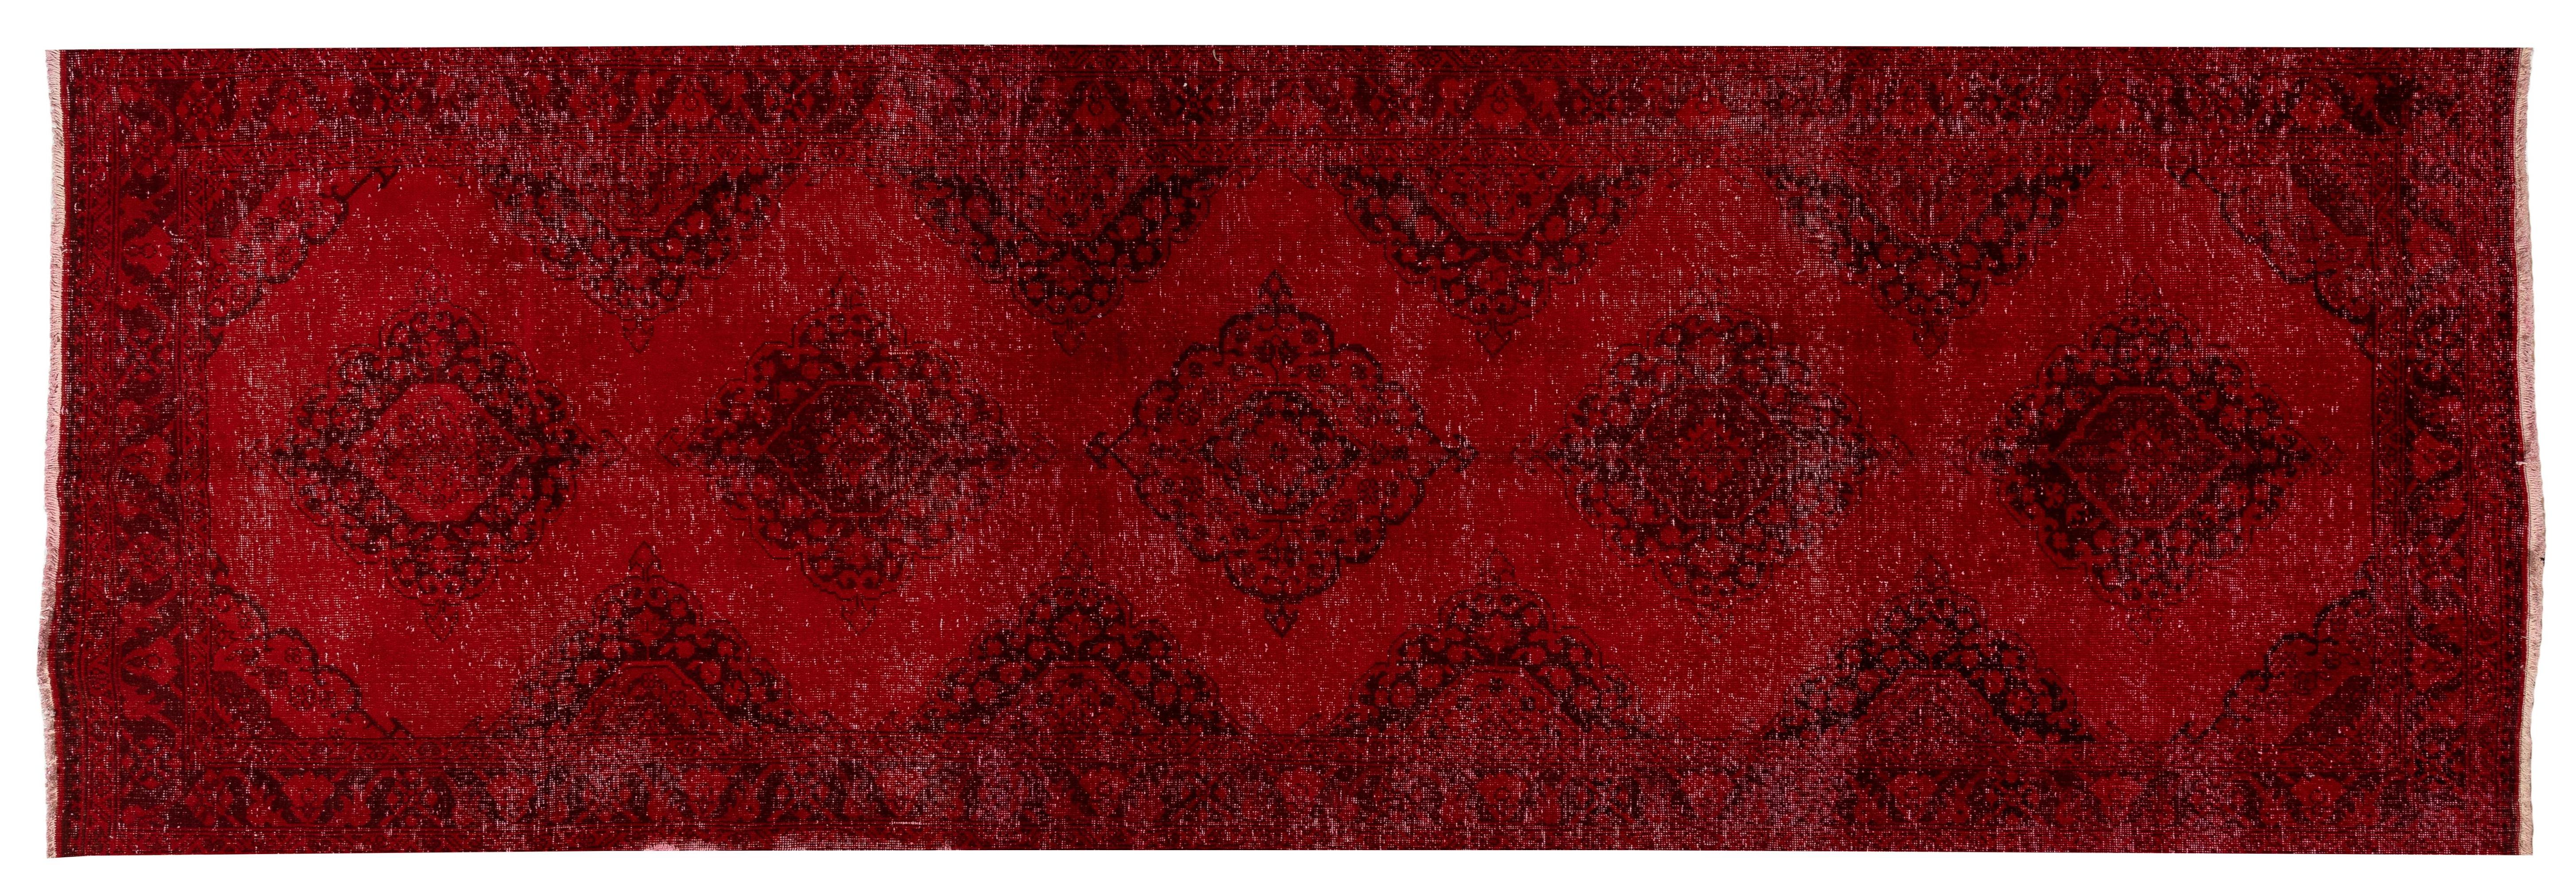 20th Century 4.3x13.5 Ft Handmade Anatolian Runner Rug. Modern Burgundy Red Corridor Carpet For Sale